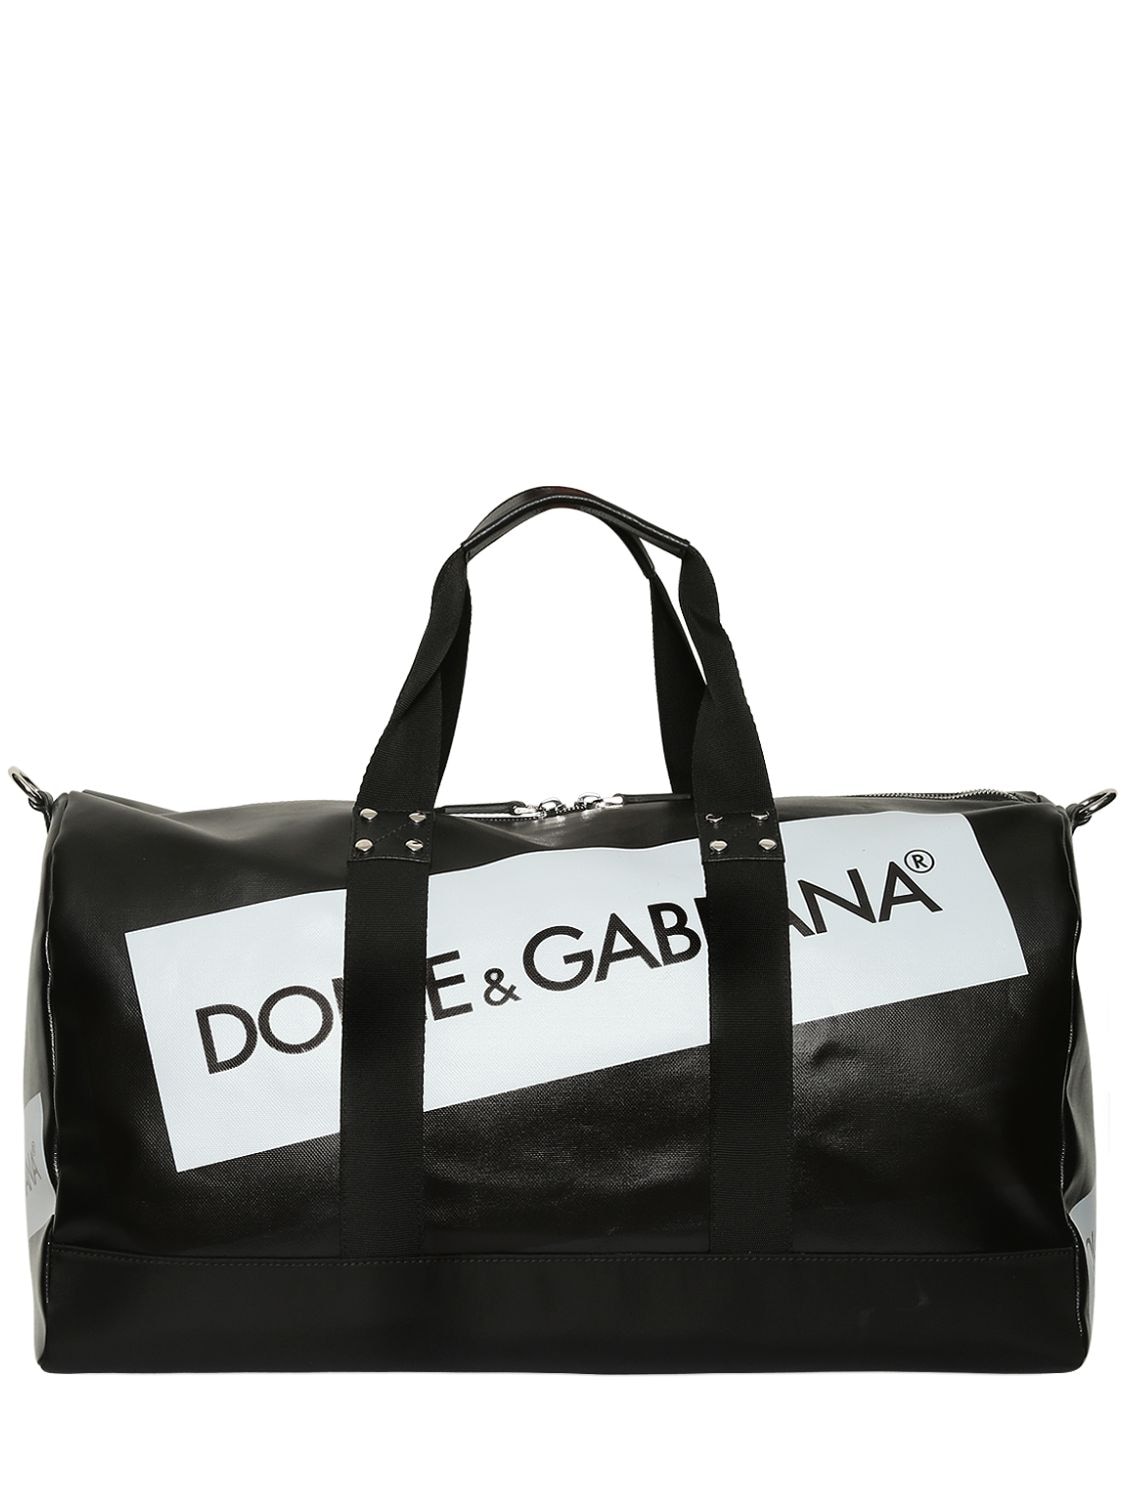 dolce gabbana travel bag